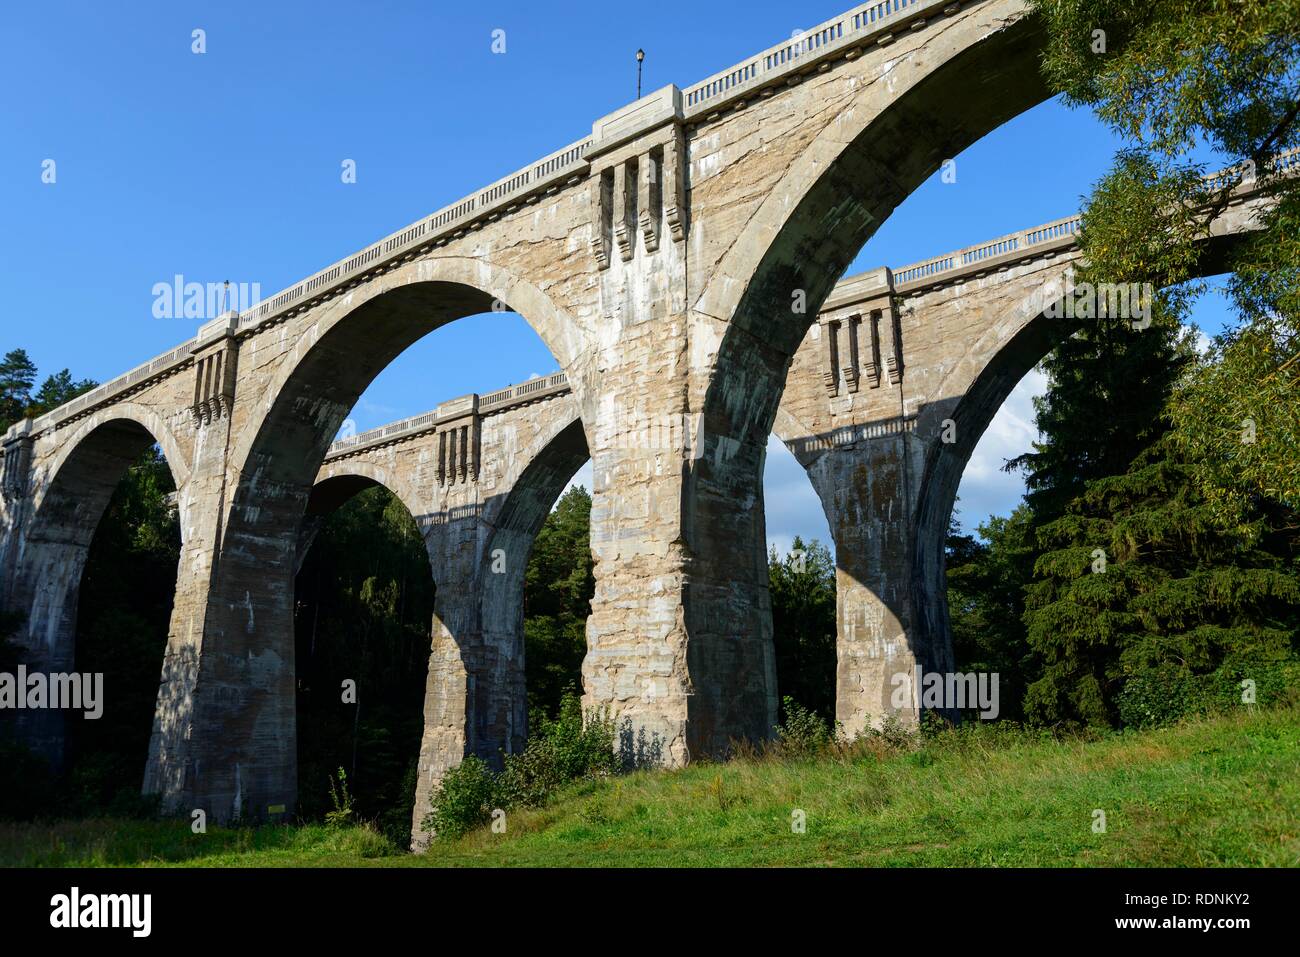 Viaduct near Stanczyki, Warmia-Masuria, Poland Stock Photo